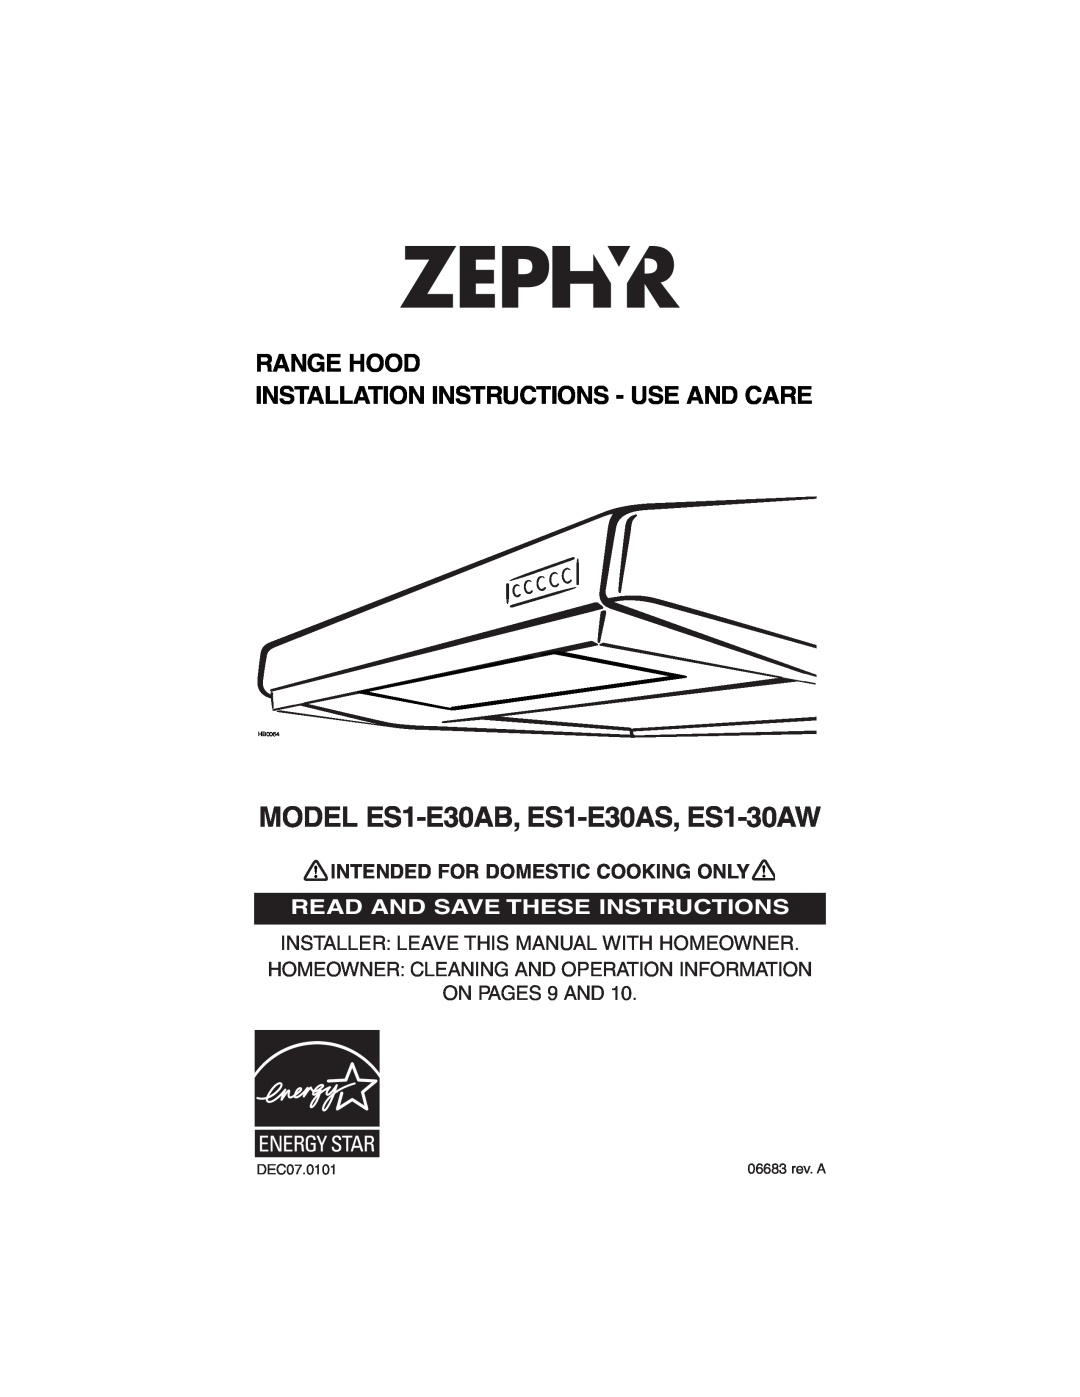 Zephyr ES1-30AW, ES1-E30AS, ES1-E30AB installation instructions Range Hood Installation Instructions - Use And Care, HB0064 